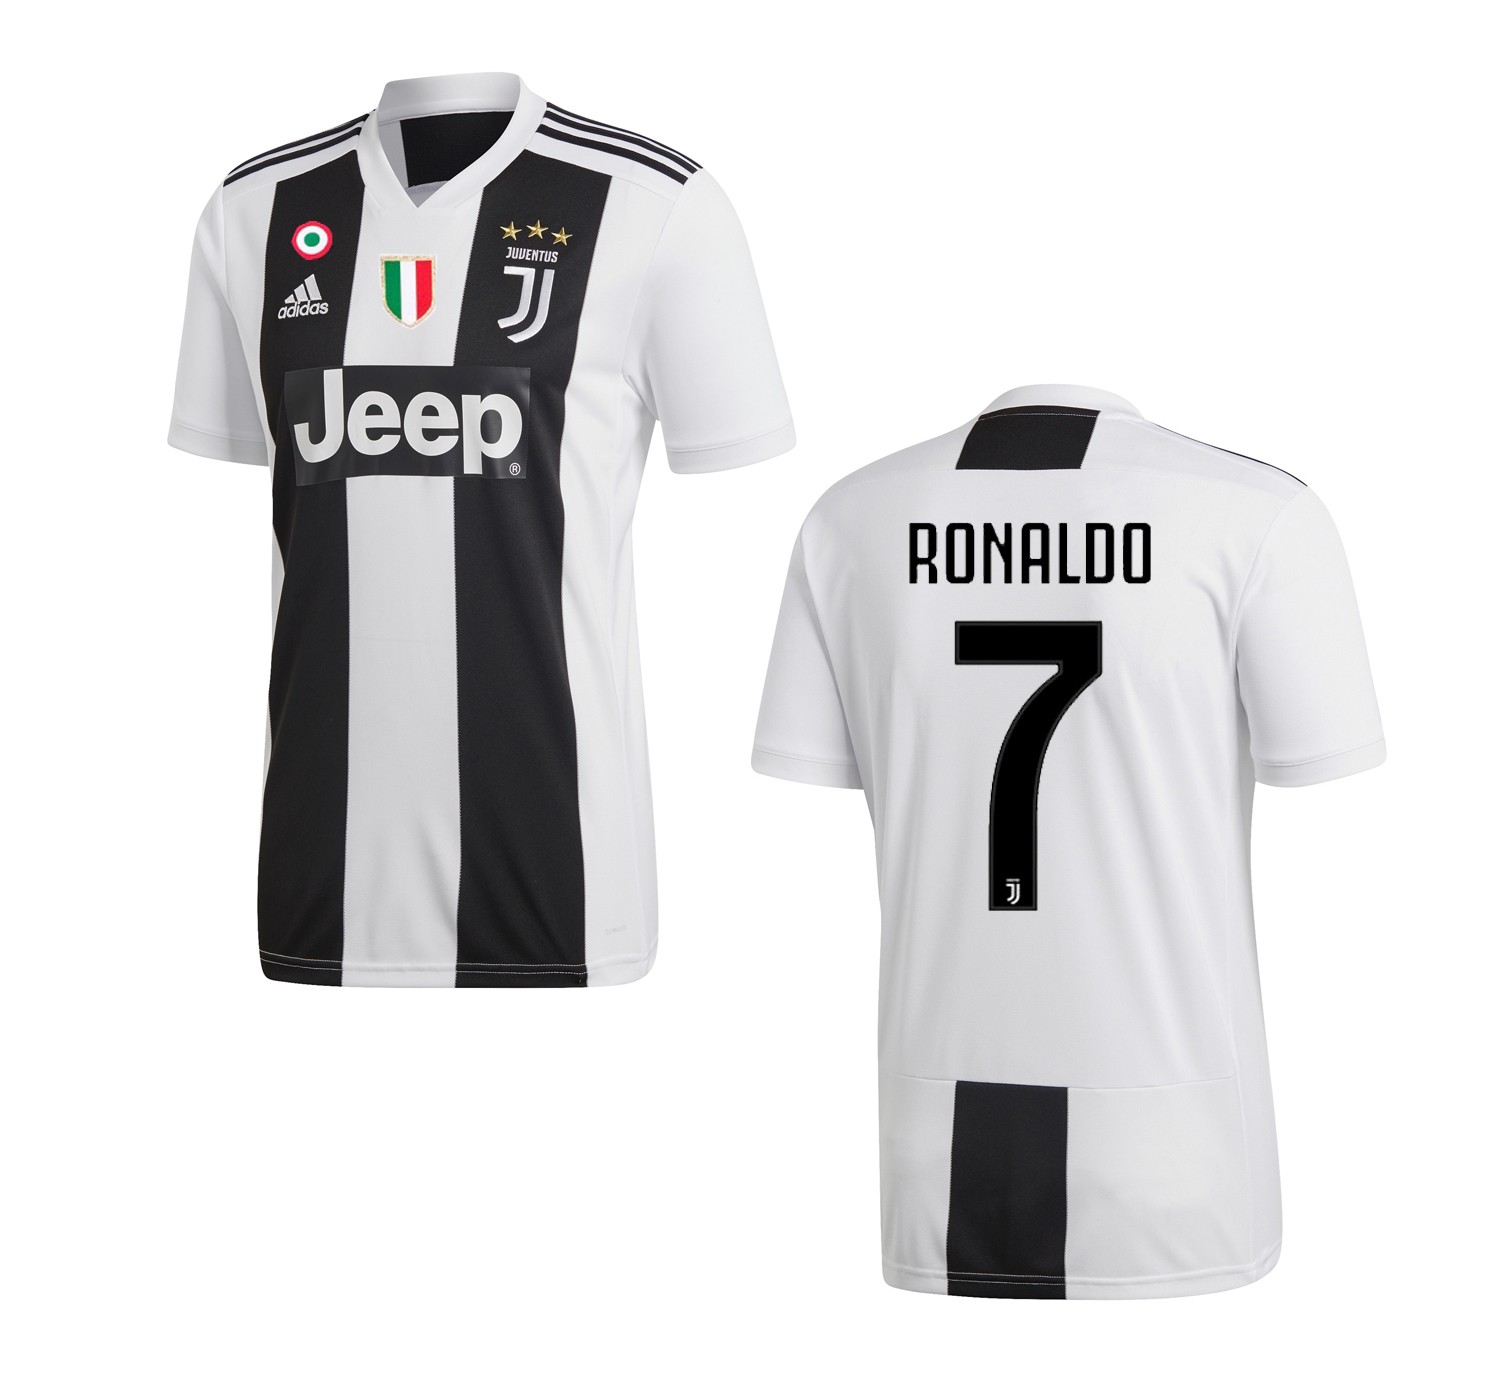 Ronaldo 7 Maglia Juventus home 2018/2019 Adidas